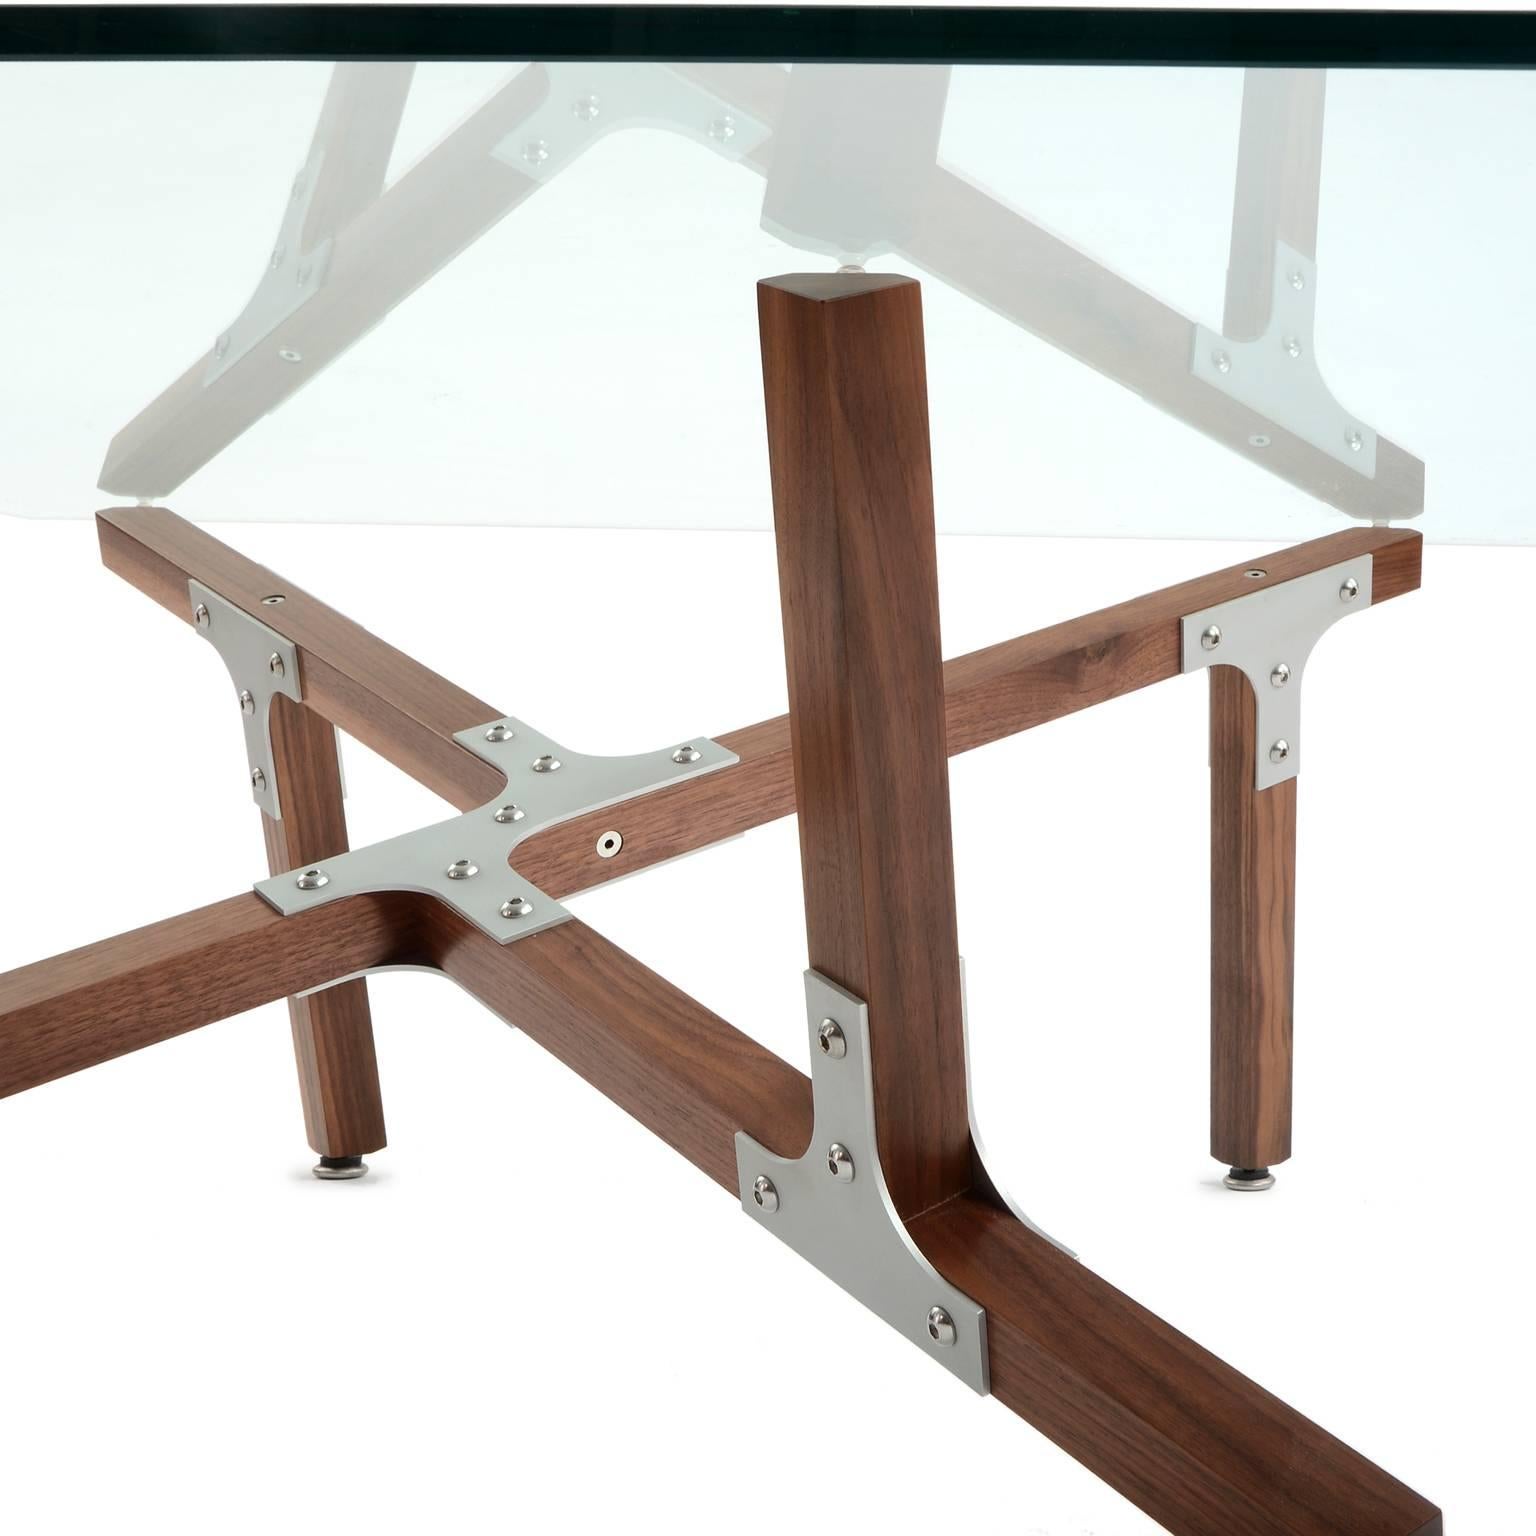 La table basse Hana de Peter Harrison réunit des carrés de noyer massif et des supports industriels en aluminium. La base est semi-symétrique, avec les mêmes éléments pointant vers le haut et vers le bas, mais ces éléments atteignent le sommet en